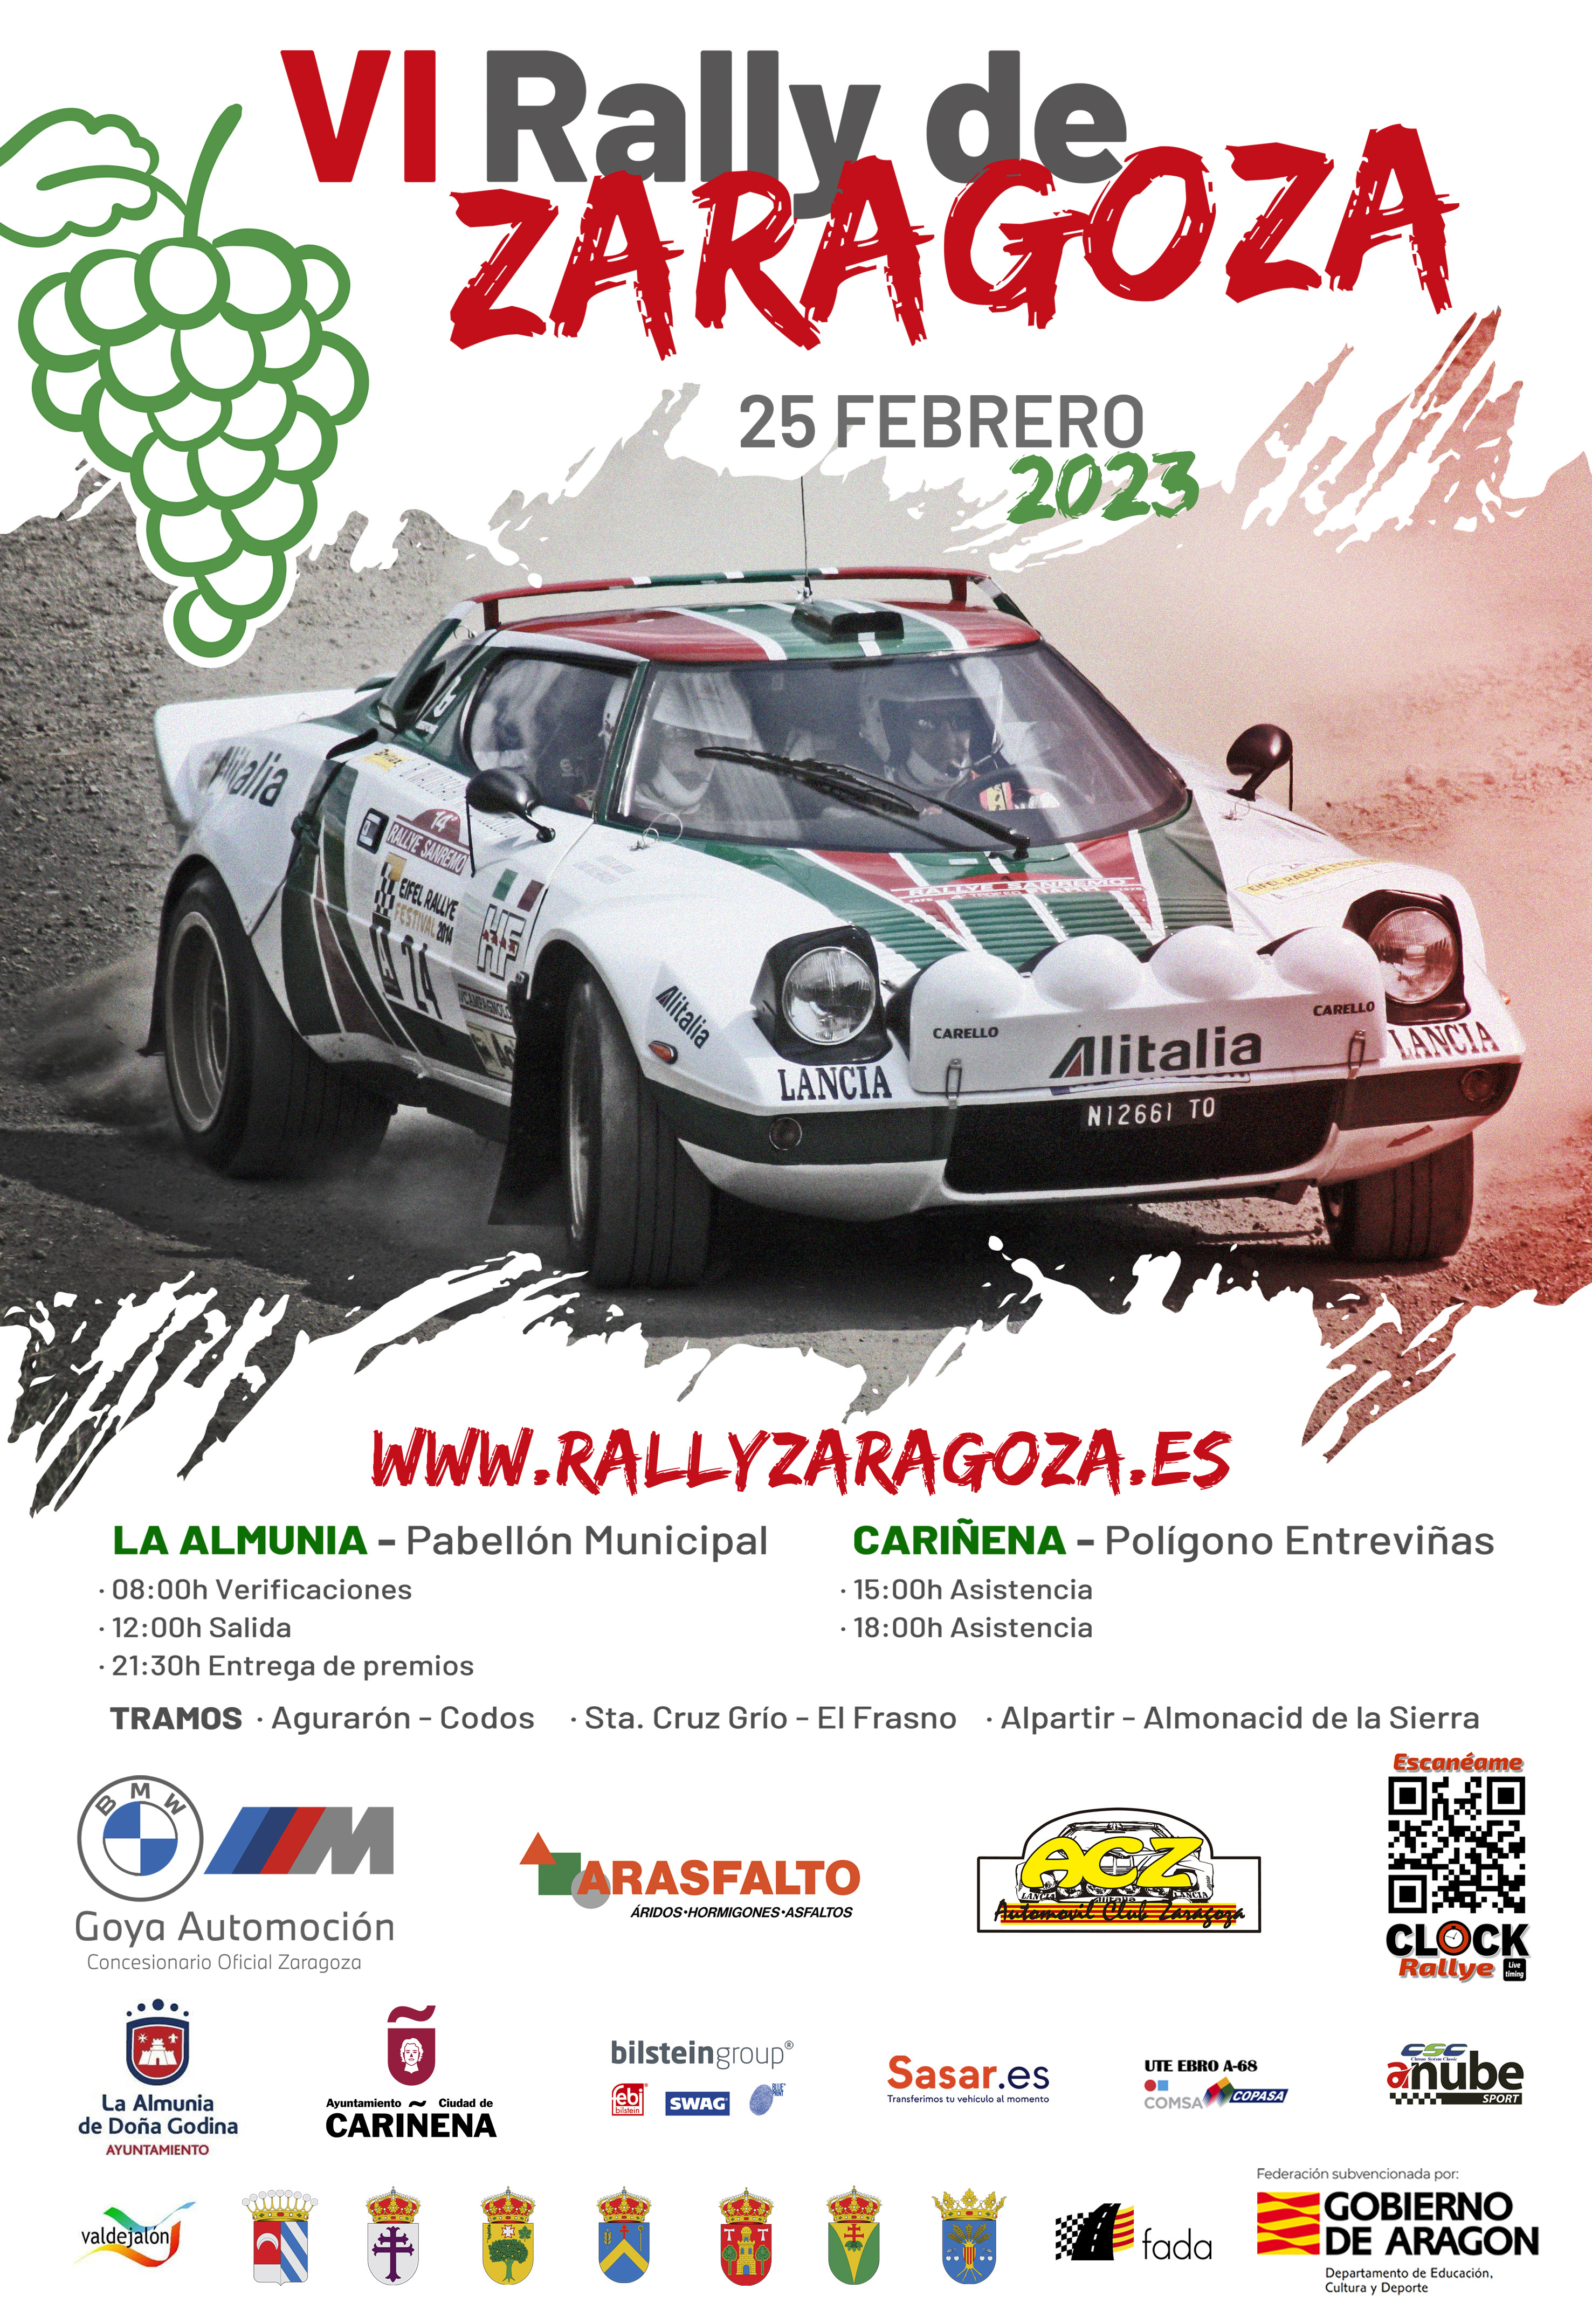 El VI Rallye A. C. Zaragoza abre la temporada 2023 el sábado 25